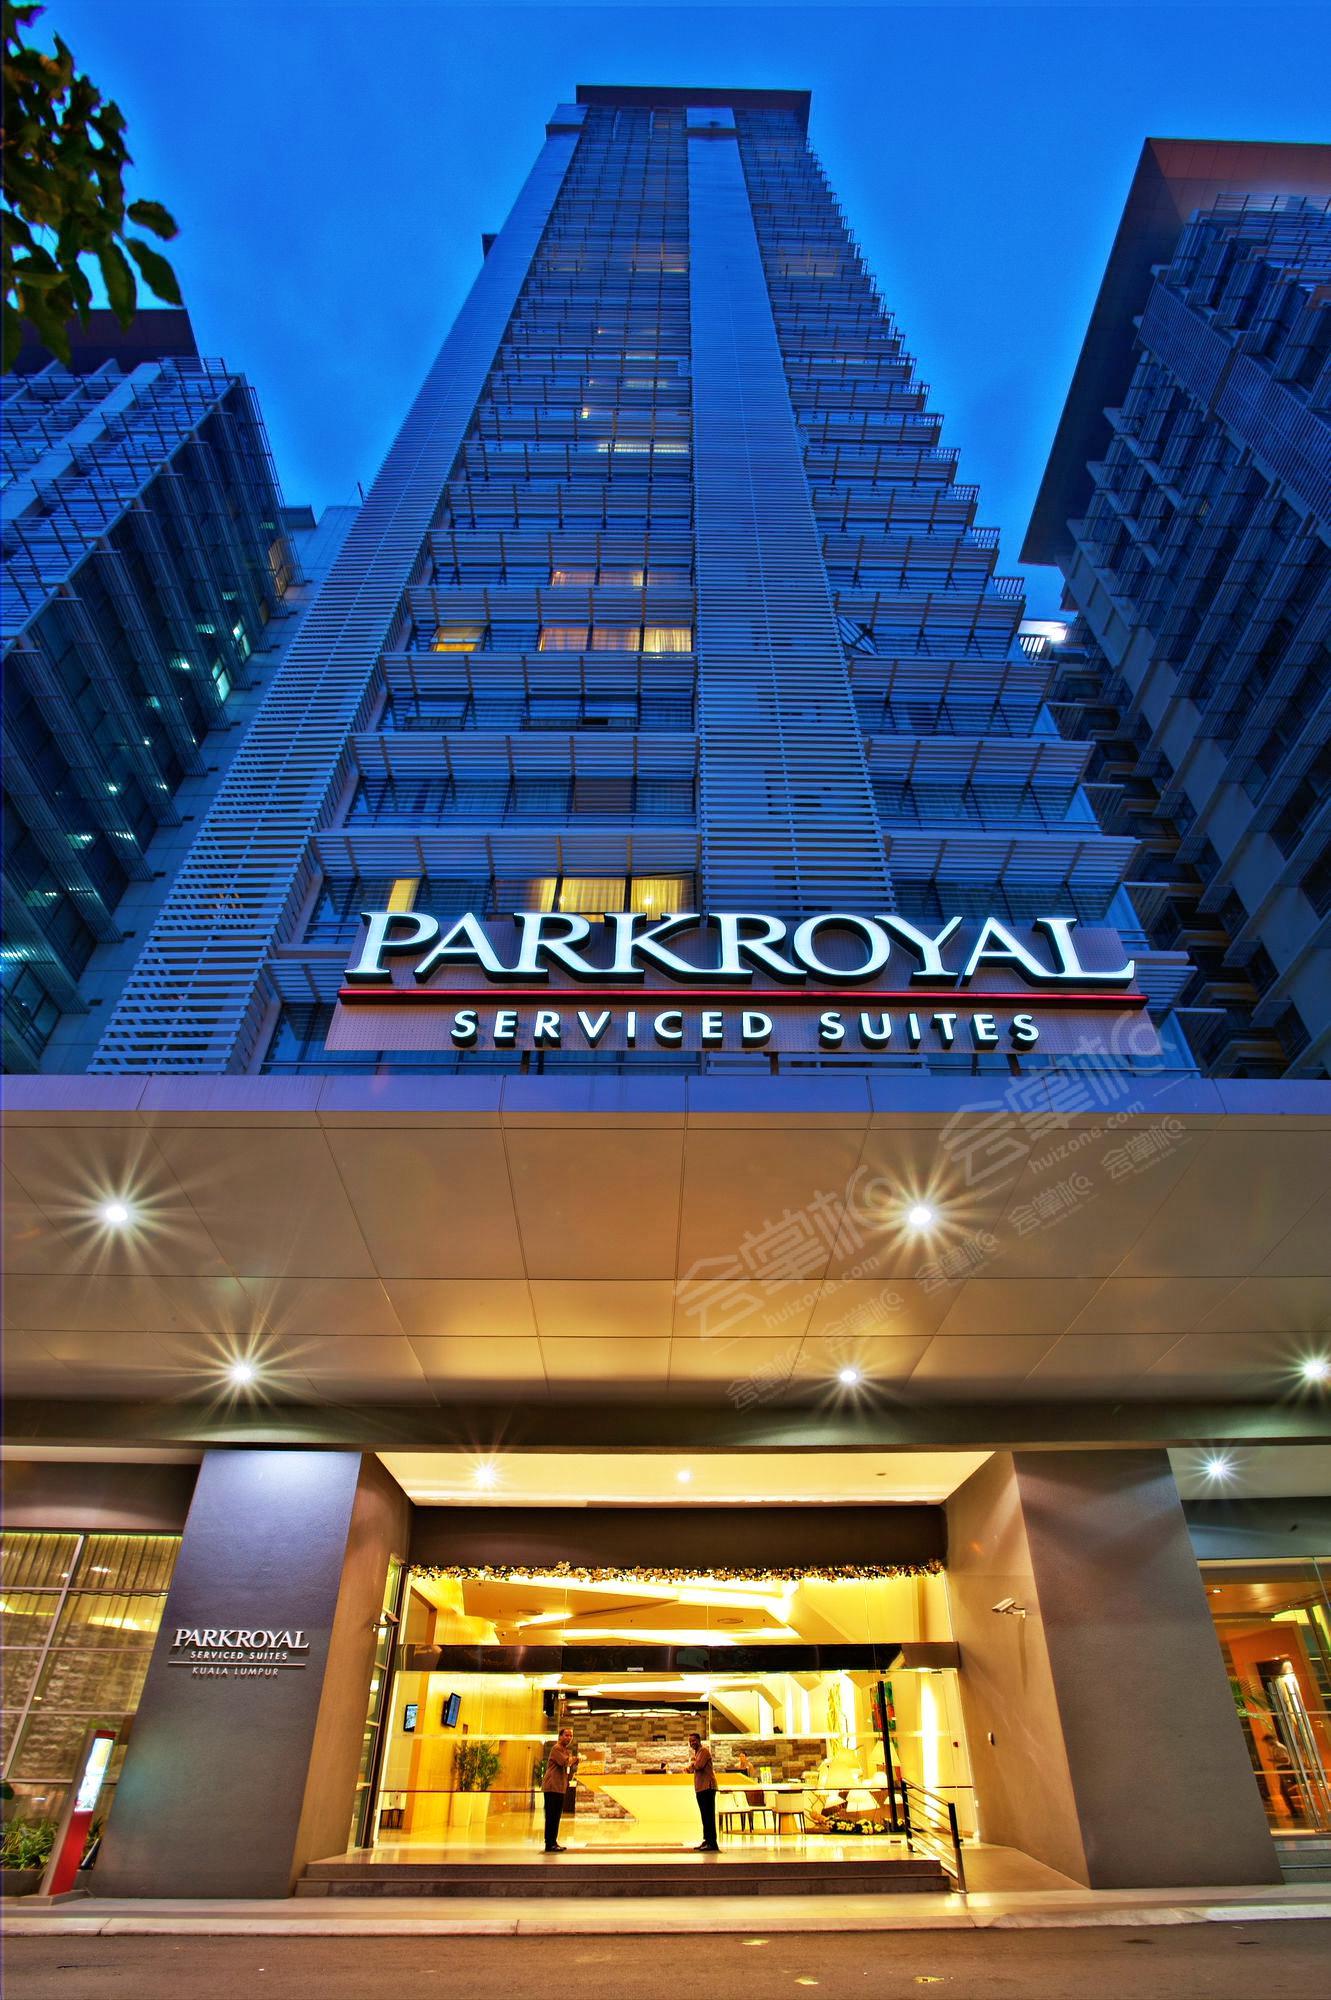 吉隆坡五星级酒店最大容纳400人的会议场地|吉隆坡宾乐雅服务公寓(Parkroyal Serviced Suites Kuala Lumpur)的价格与联系方式